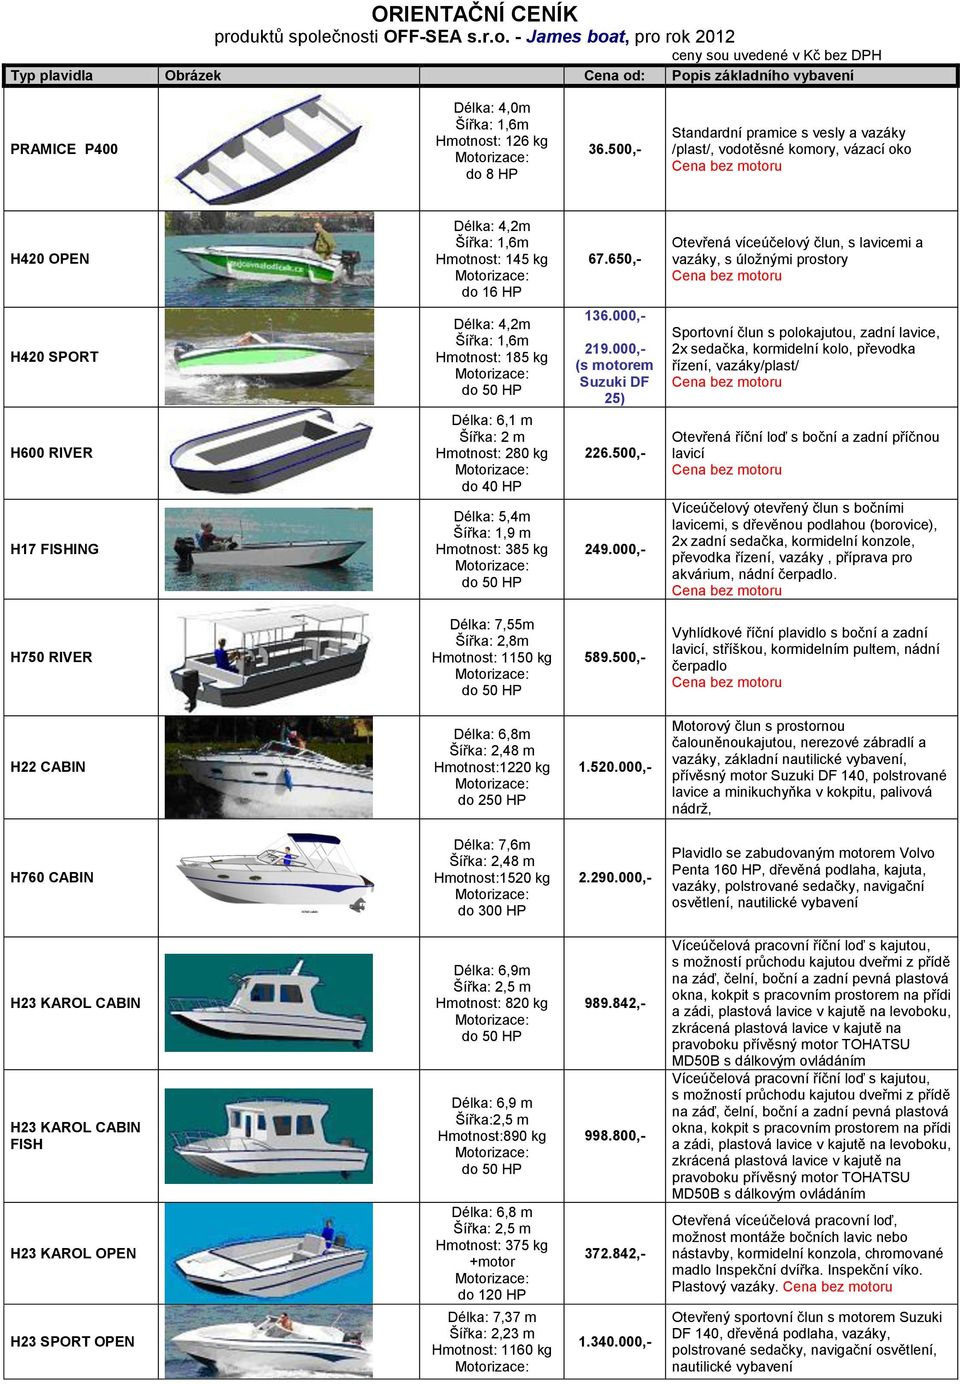 650,- Otevřená víceúčelový člun, s lavicemi a vazáky, s úložnými prostory H420 SPORT H600 RIVER H17 FISHING Délka: 4,2m Šířka: 1,6m Hmotnost: 185 kg Délka: 6,1 m Šířka: 2 m Hmotnost: 280 kg do 40 HP